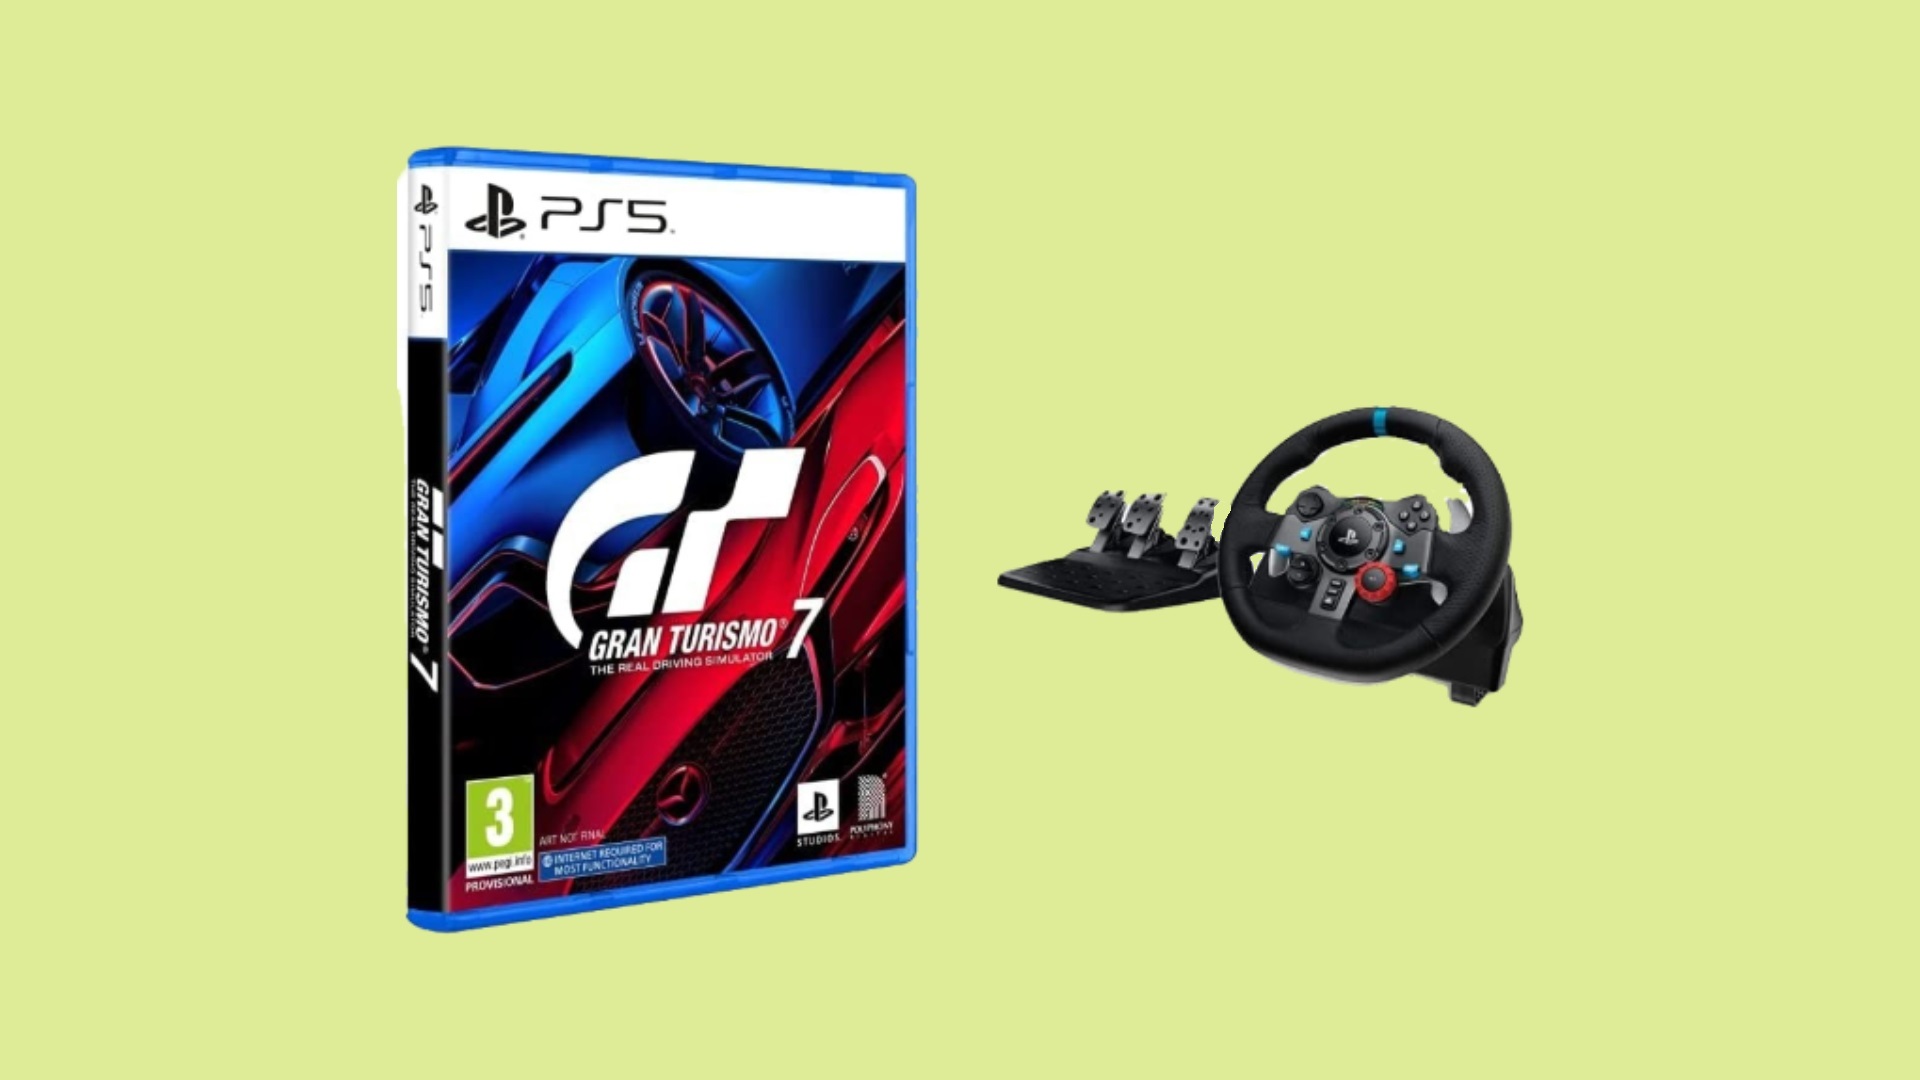 Gran Turismo 7 Editions: PS5, PS4, 25th Anniversary Edition, price, & more!